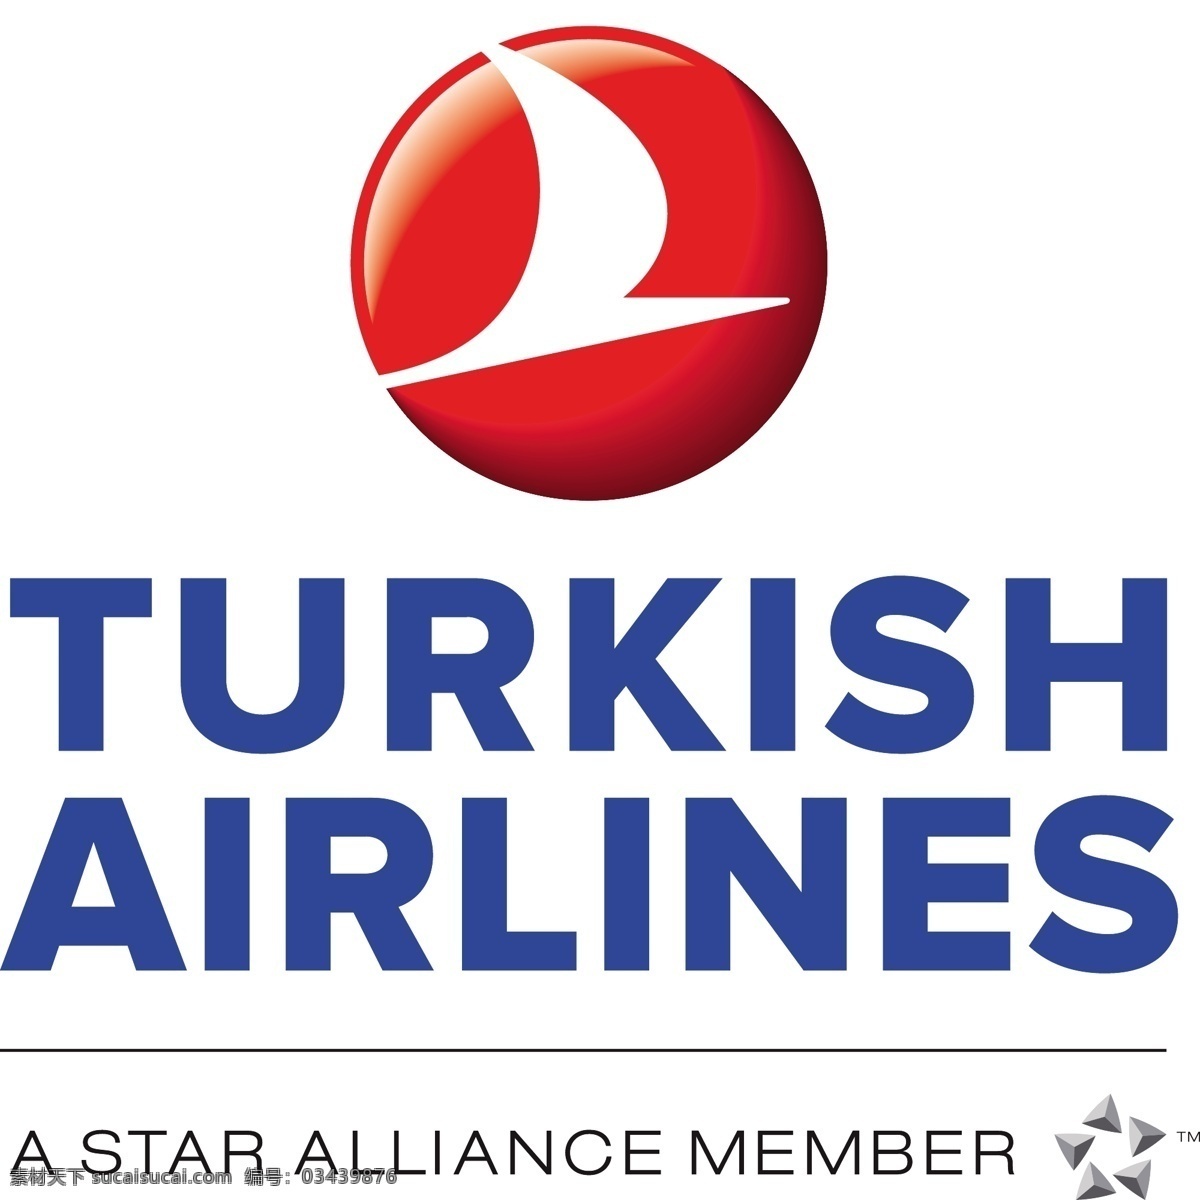 土耳其 航空公司 标识 公司 免费 品牌 品牌标识 商标 矢量标志下载 免费矢量标识 矢量 psd源文件 logo设计